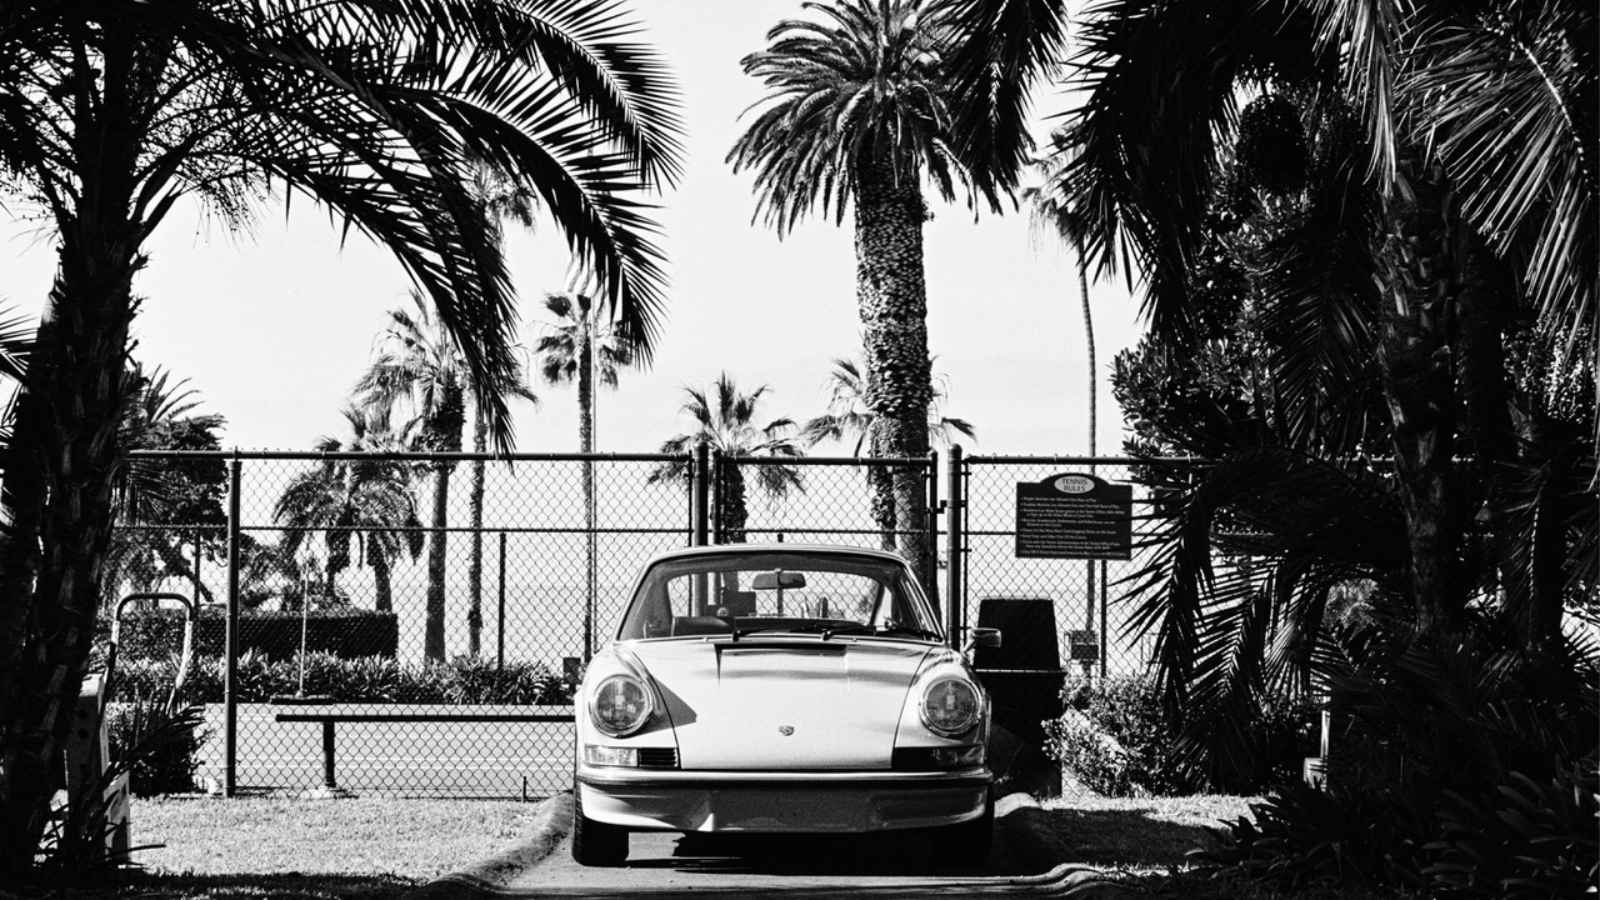 El nuevo libro del fotógrafo Bart Kuykens, un homenaje a Porsche